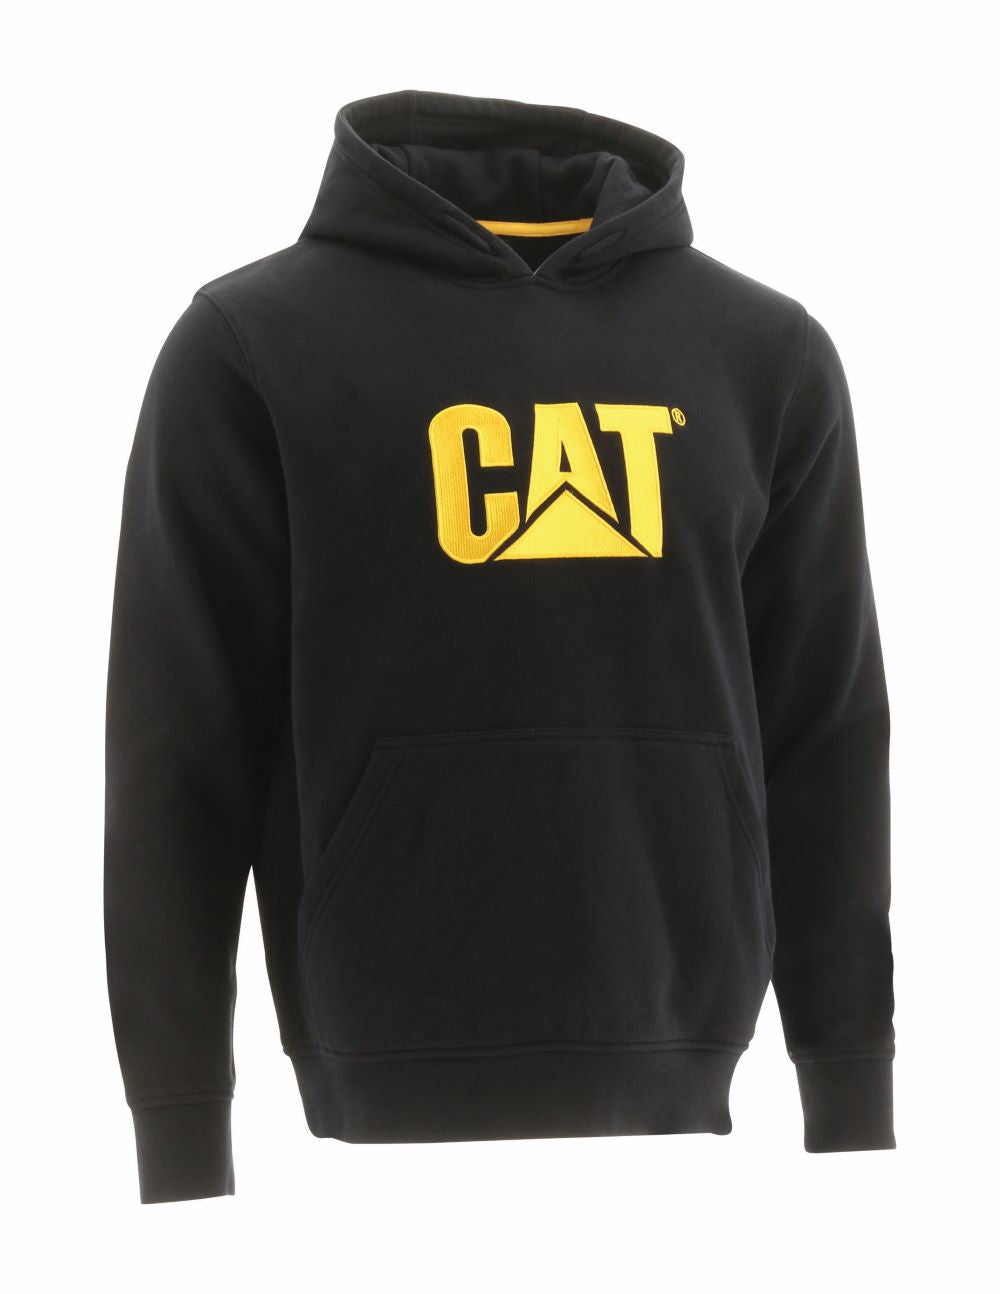 'Caterpillar' Men's Trademark Hooded Sweatshirt - Black